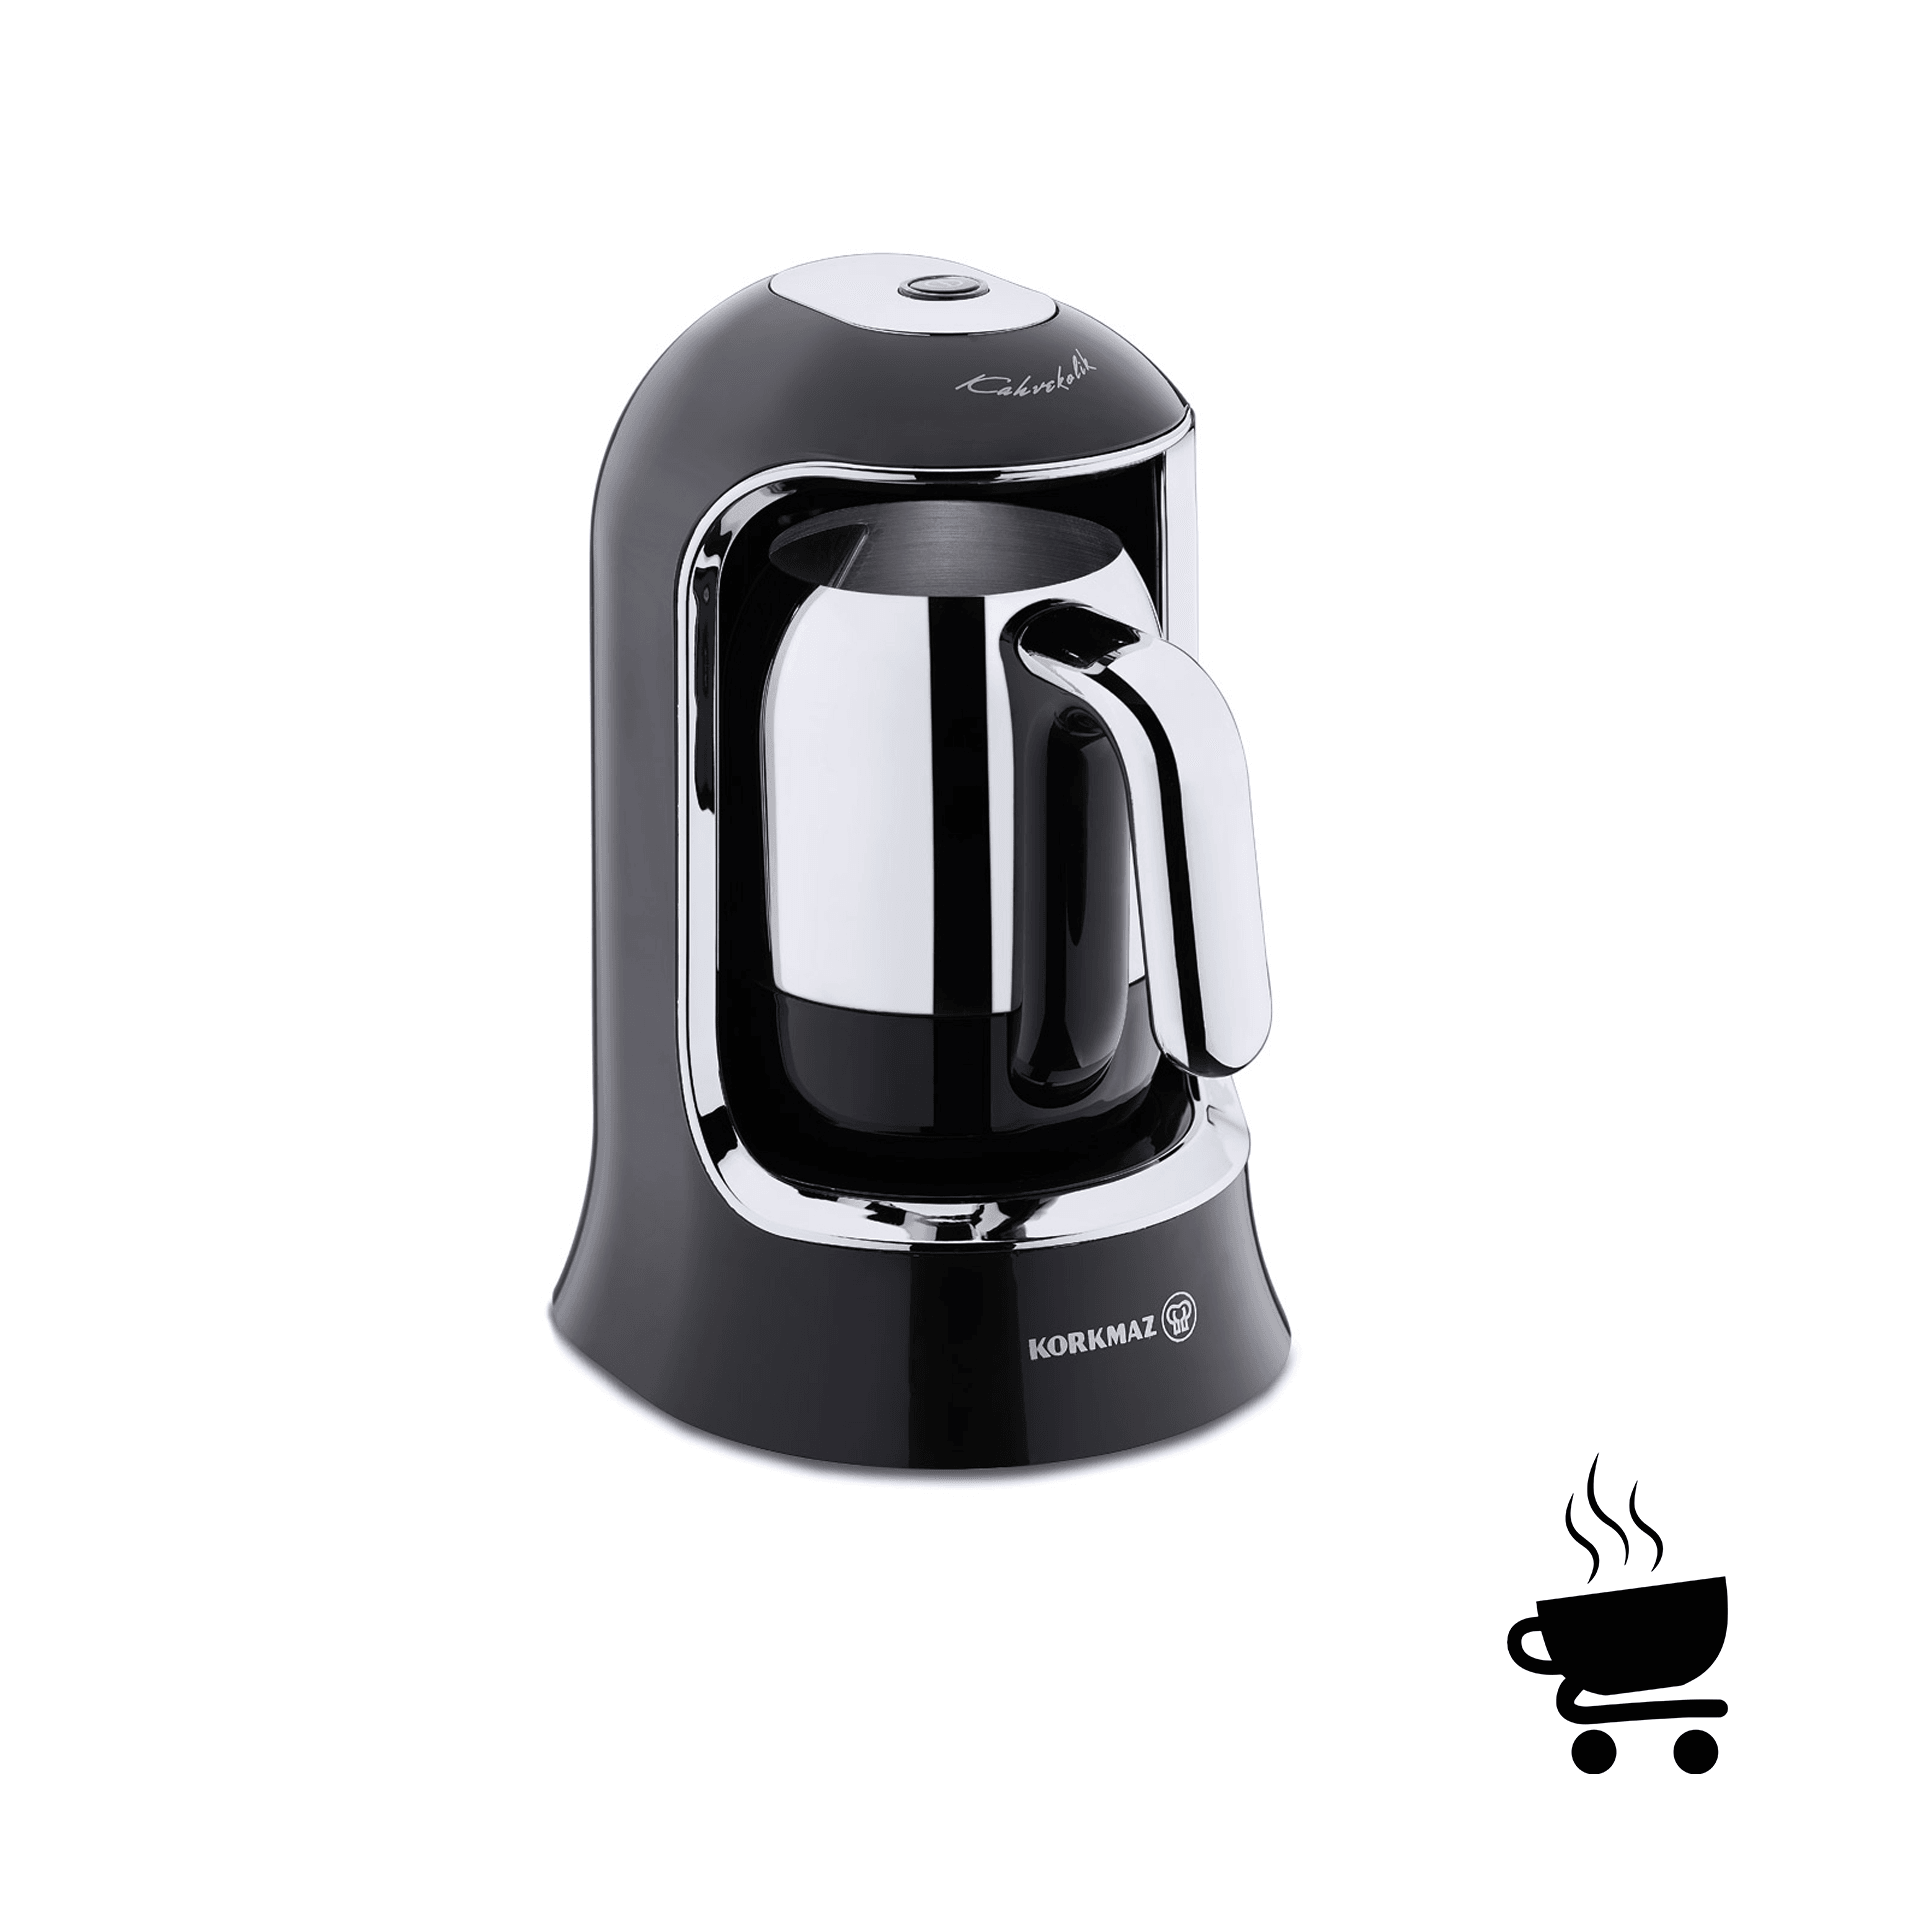 Korkmaz Kahvekolik  Otomatik Kahve Makinesi - Siyah